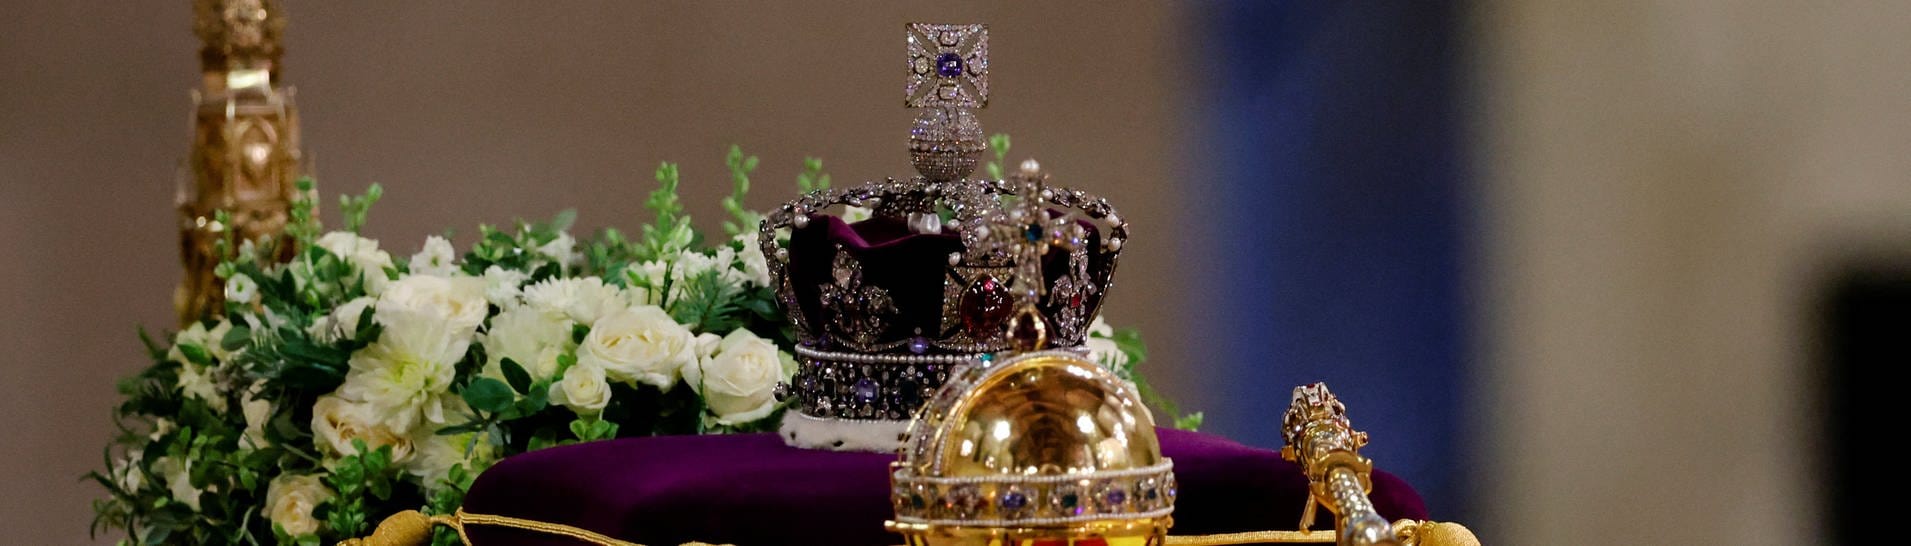 Der Sarg von Königin Elisabeth II., drapiert mit der königlichen Standarte, der Reichskrone und dem Reichsapfel und Zepter des Herrschers, liegt auf dem Katafalk in der Westminster Hall im Palast von Westminster, London.